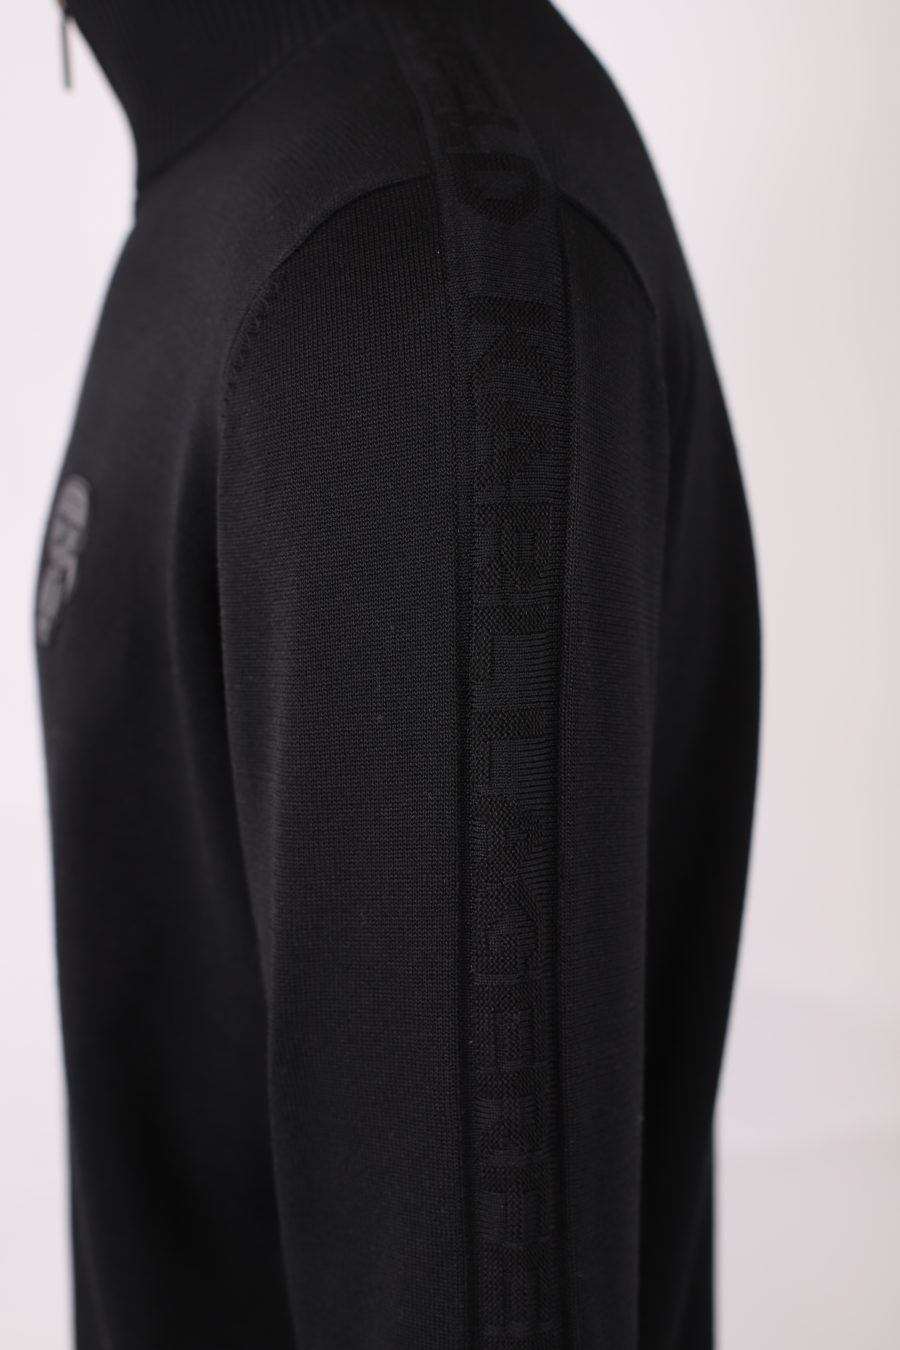 Jersey negro con cremallera y logo engomado de "Karl" - IMG 9162